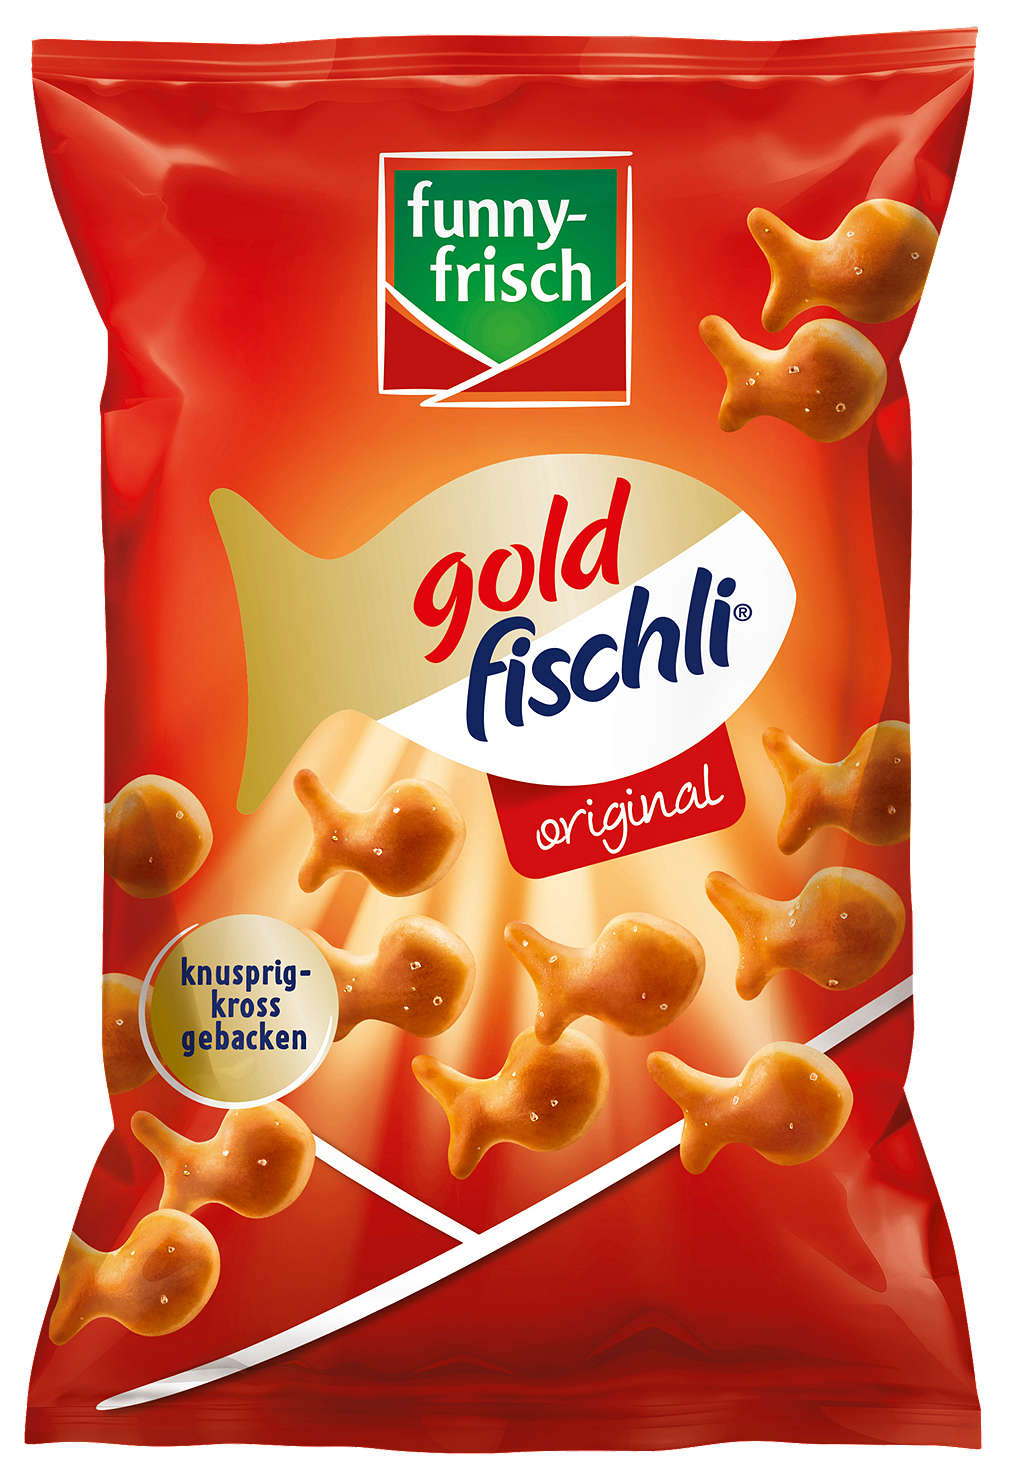 Abbildung des Angebots FUNNY-FRISCH Goldfischli 